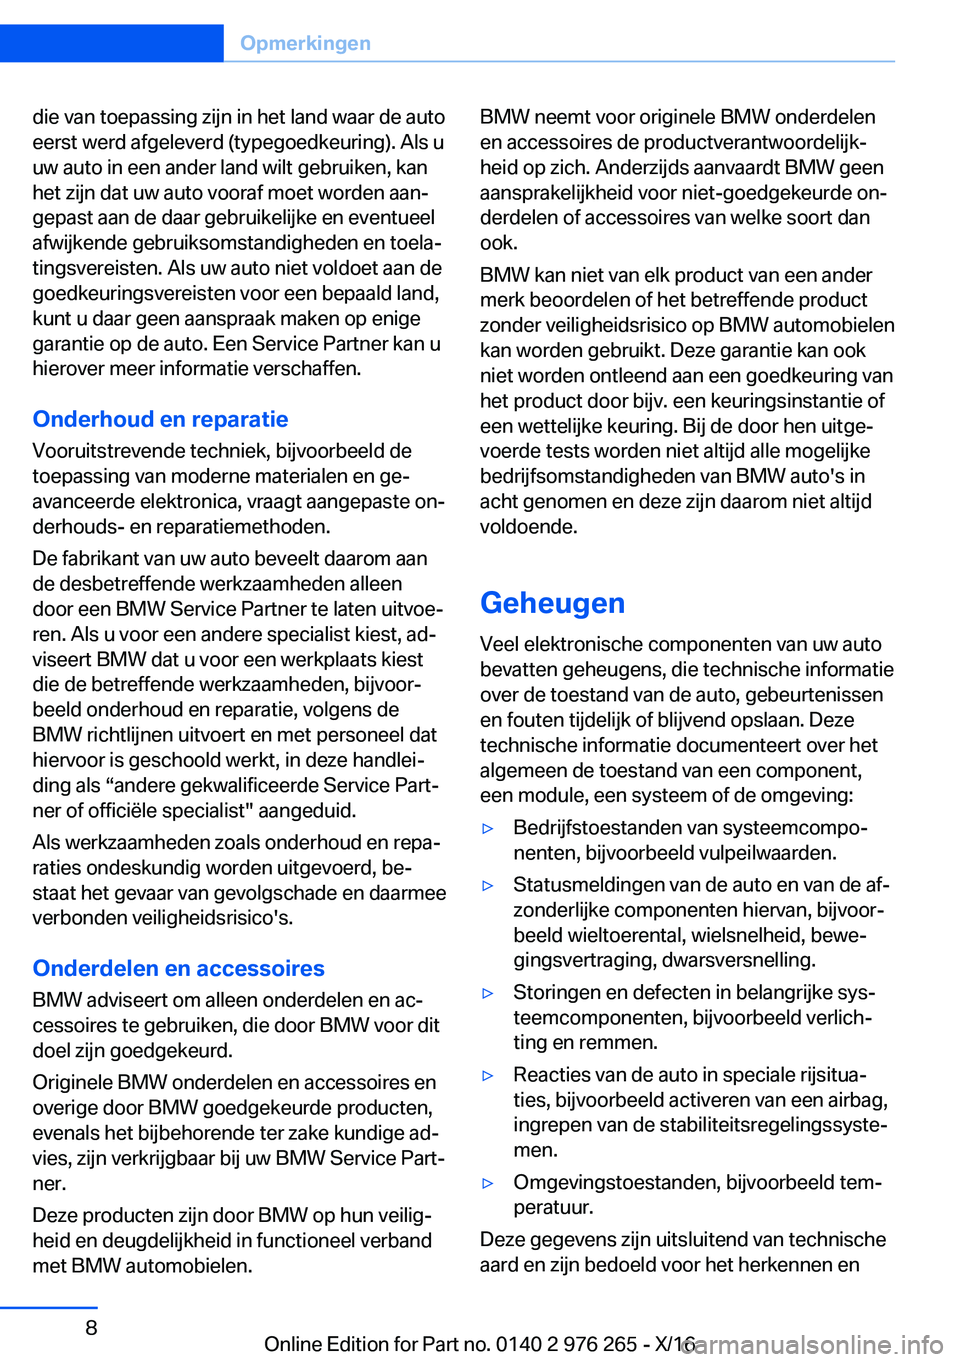 BMW 7 SERIES 2017  Instructieboekjes (in Dutch) �d�i�e� �v�a�n� �t�o�e�p�a�s�s�i�n�g� �z�i�j�n� �i�n� �h�e�t� �l�a�n�d� �w�a�a�r� �d�e� �a�u�t�o
�e�e�r�s�t� �w�e�r�d� �a�f�g�e�l�e�v�e�r�d� �(�t�y�p�e�g�o�e�d�k�e�u�r�i�n�g�)�.� �A�l�s� �u �u�w� �a�u